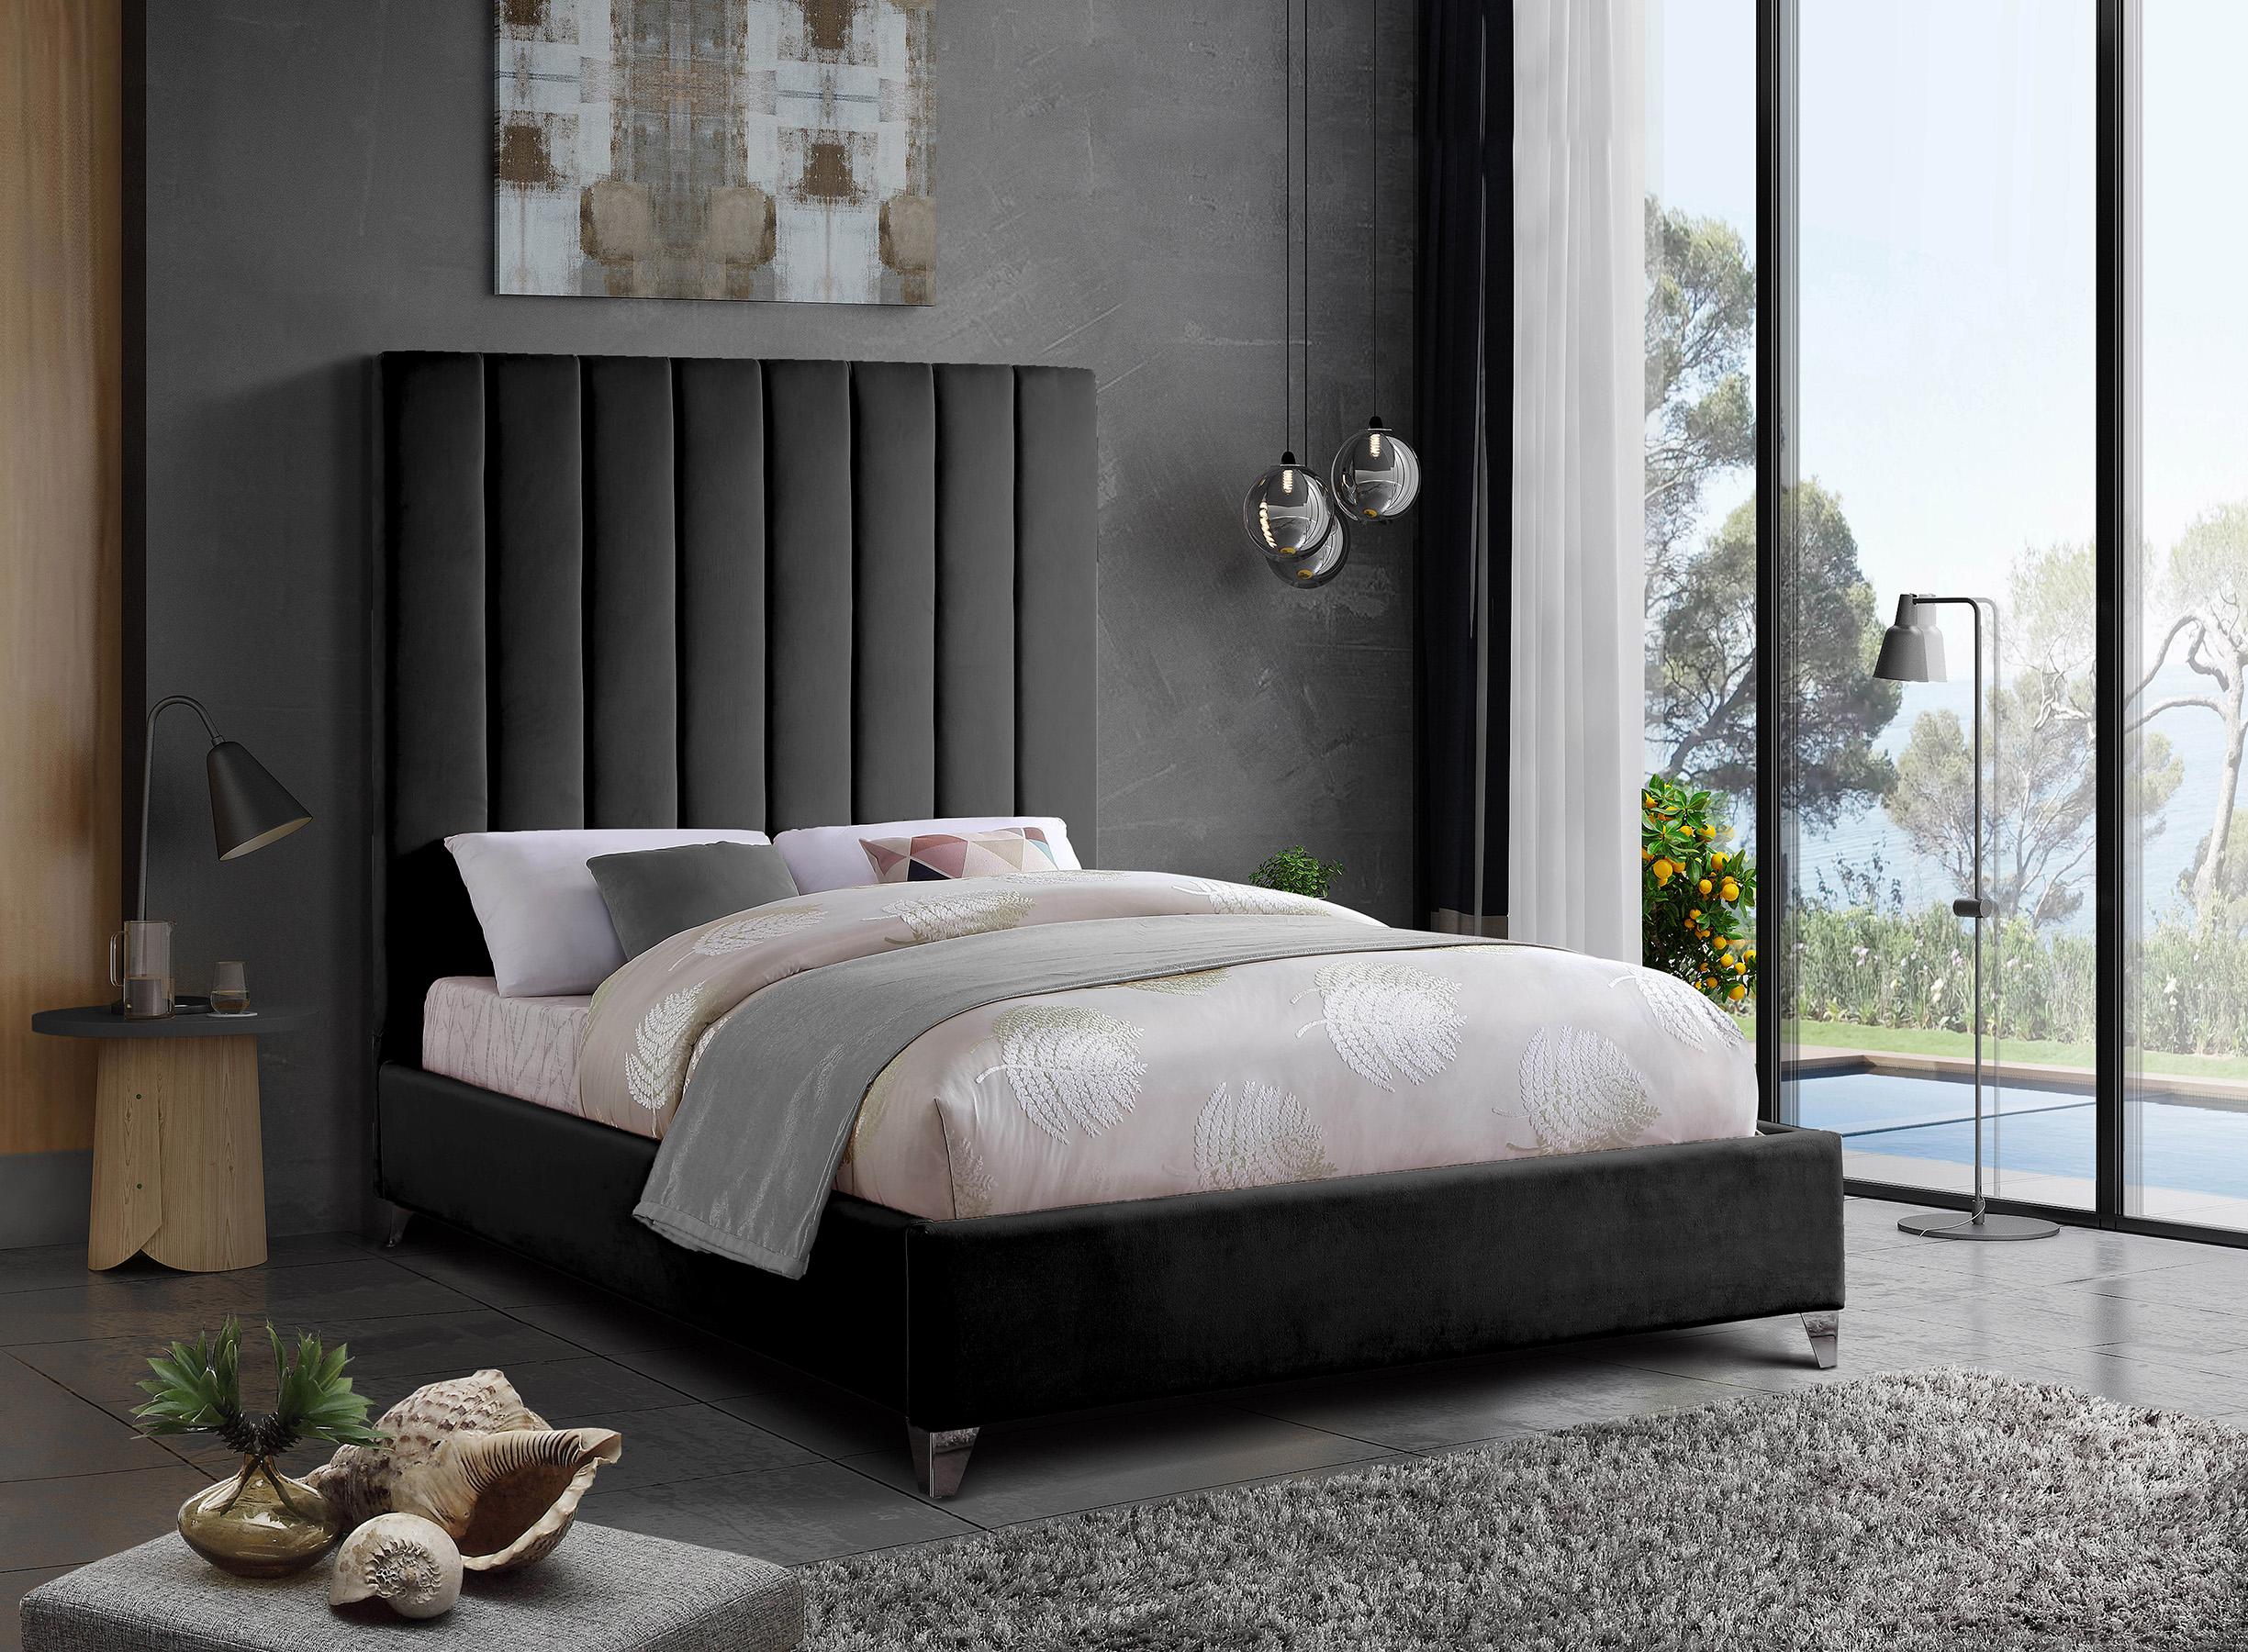 

    
ViaBlack-F Meridian Furniture Platform Bed
